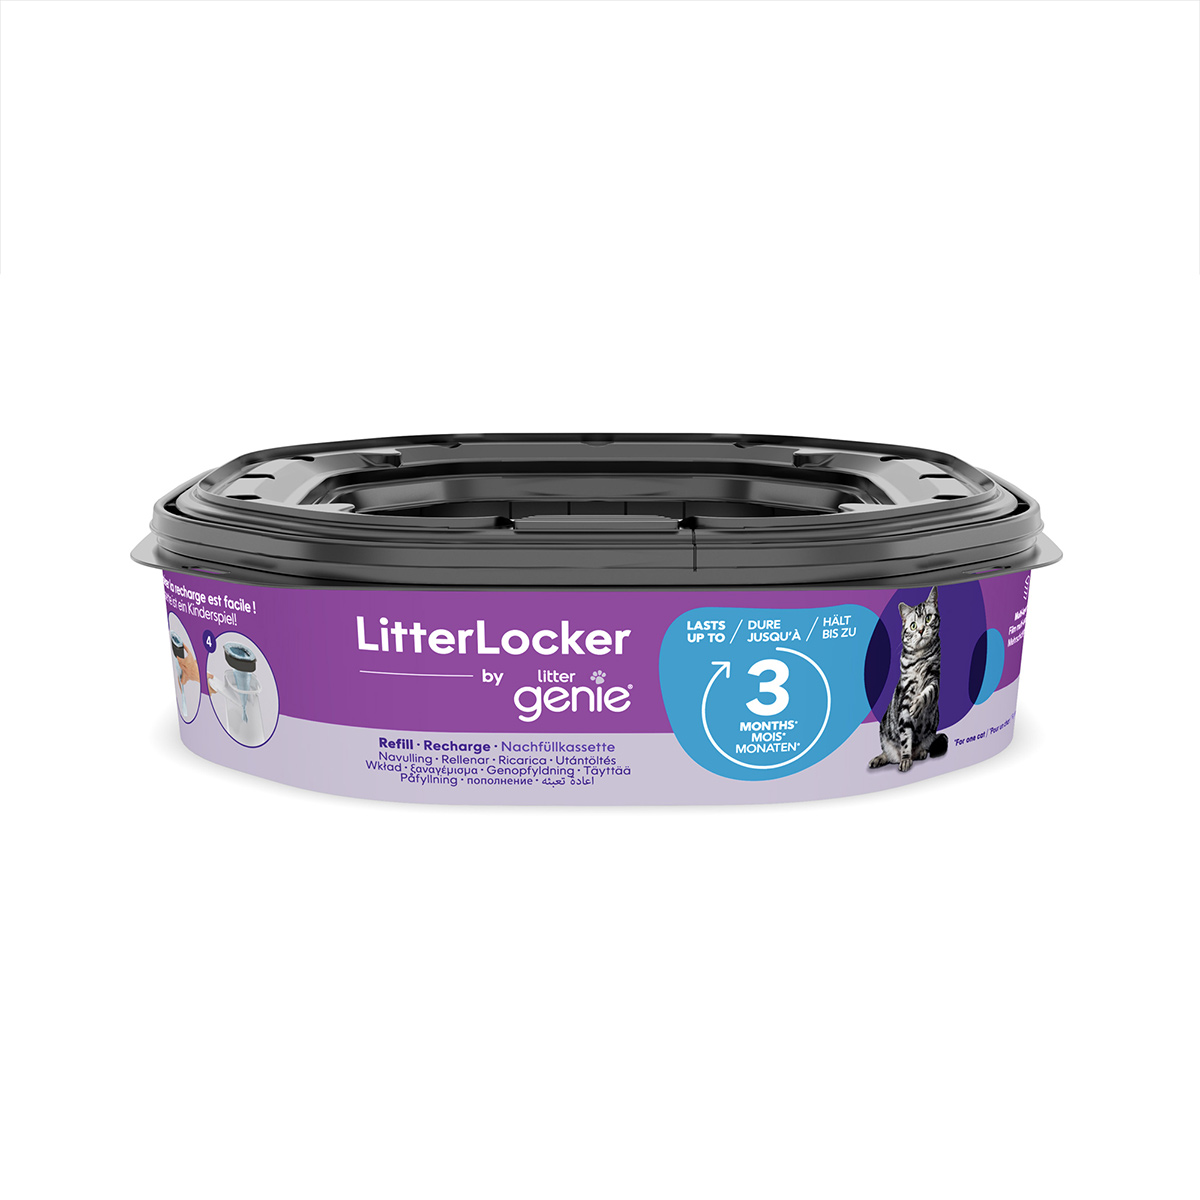 LitterLocker by Litter Genie doplňovací kazeta XL